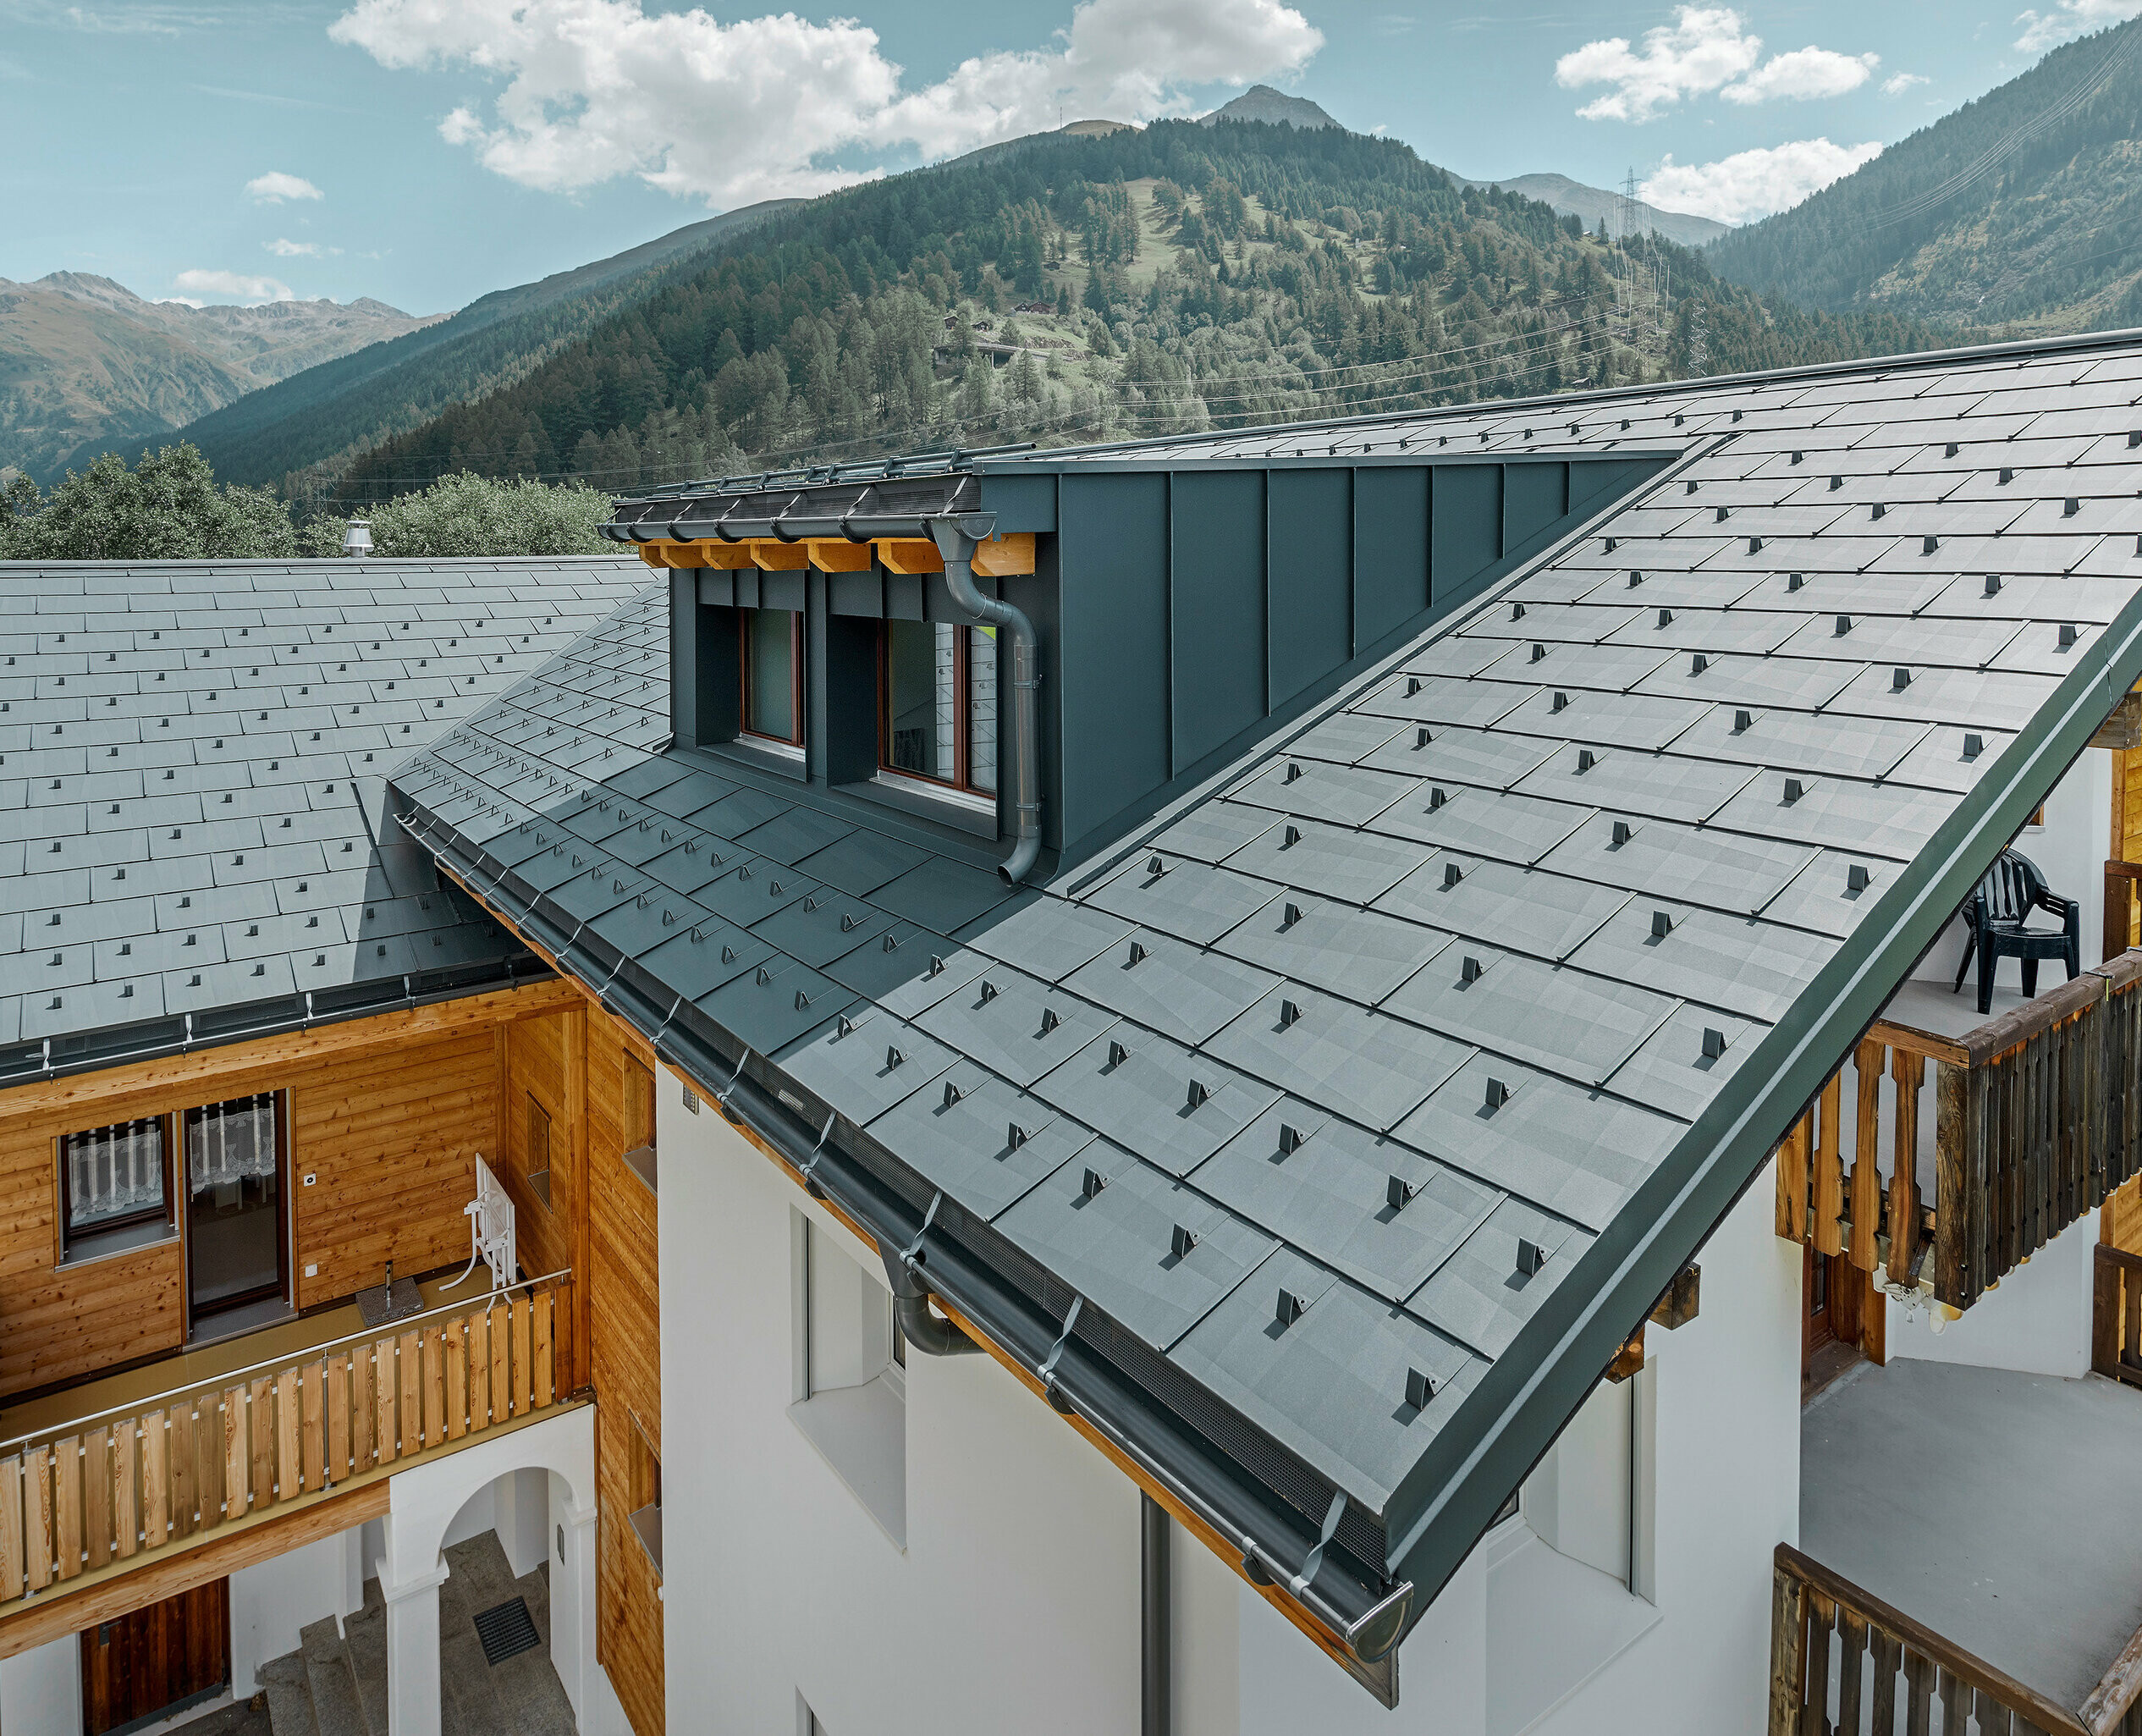 Bytový dům s vikýřem a sedlovou střechou pokrytou střešními panely PREFA FX.12 v antracitové barvě; v pozadí se vypínají hory;